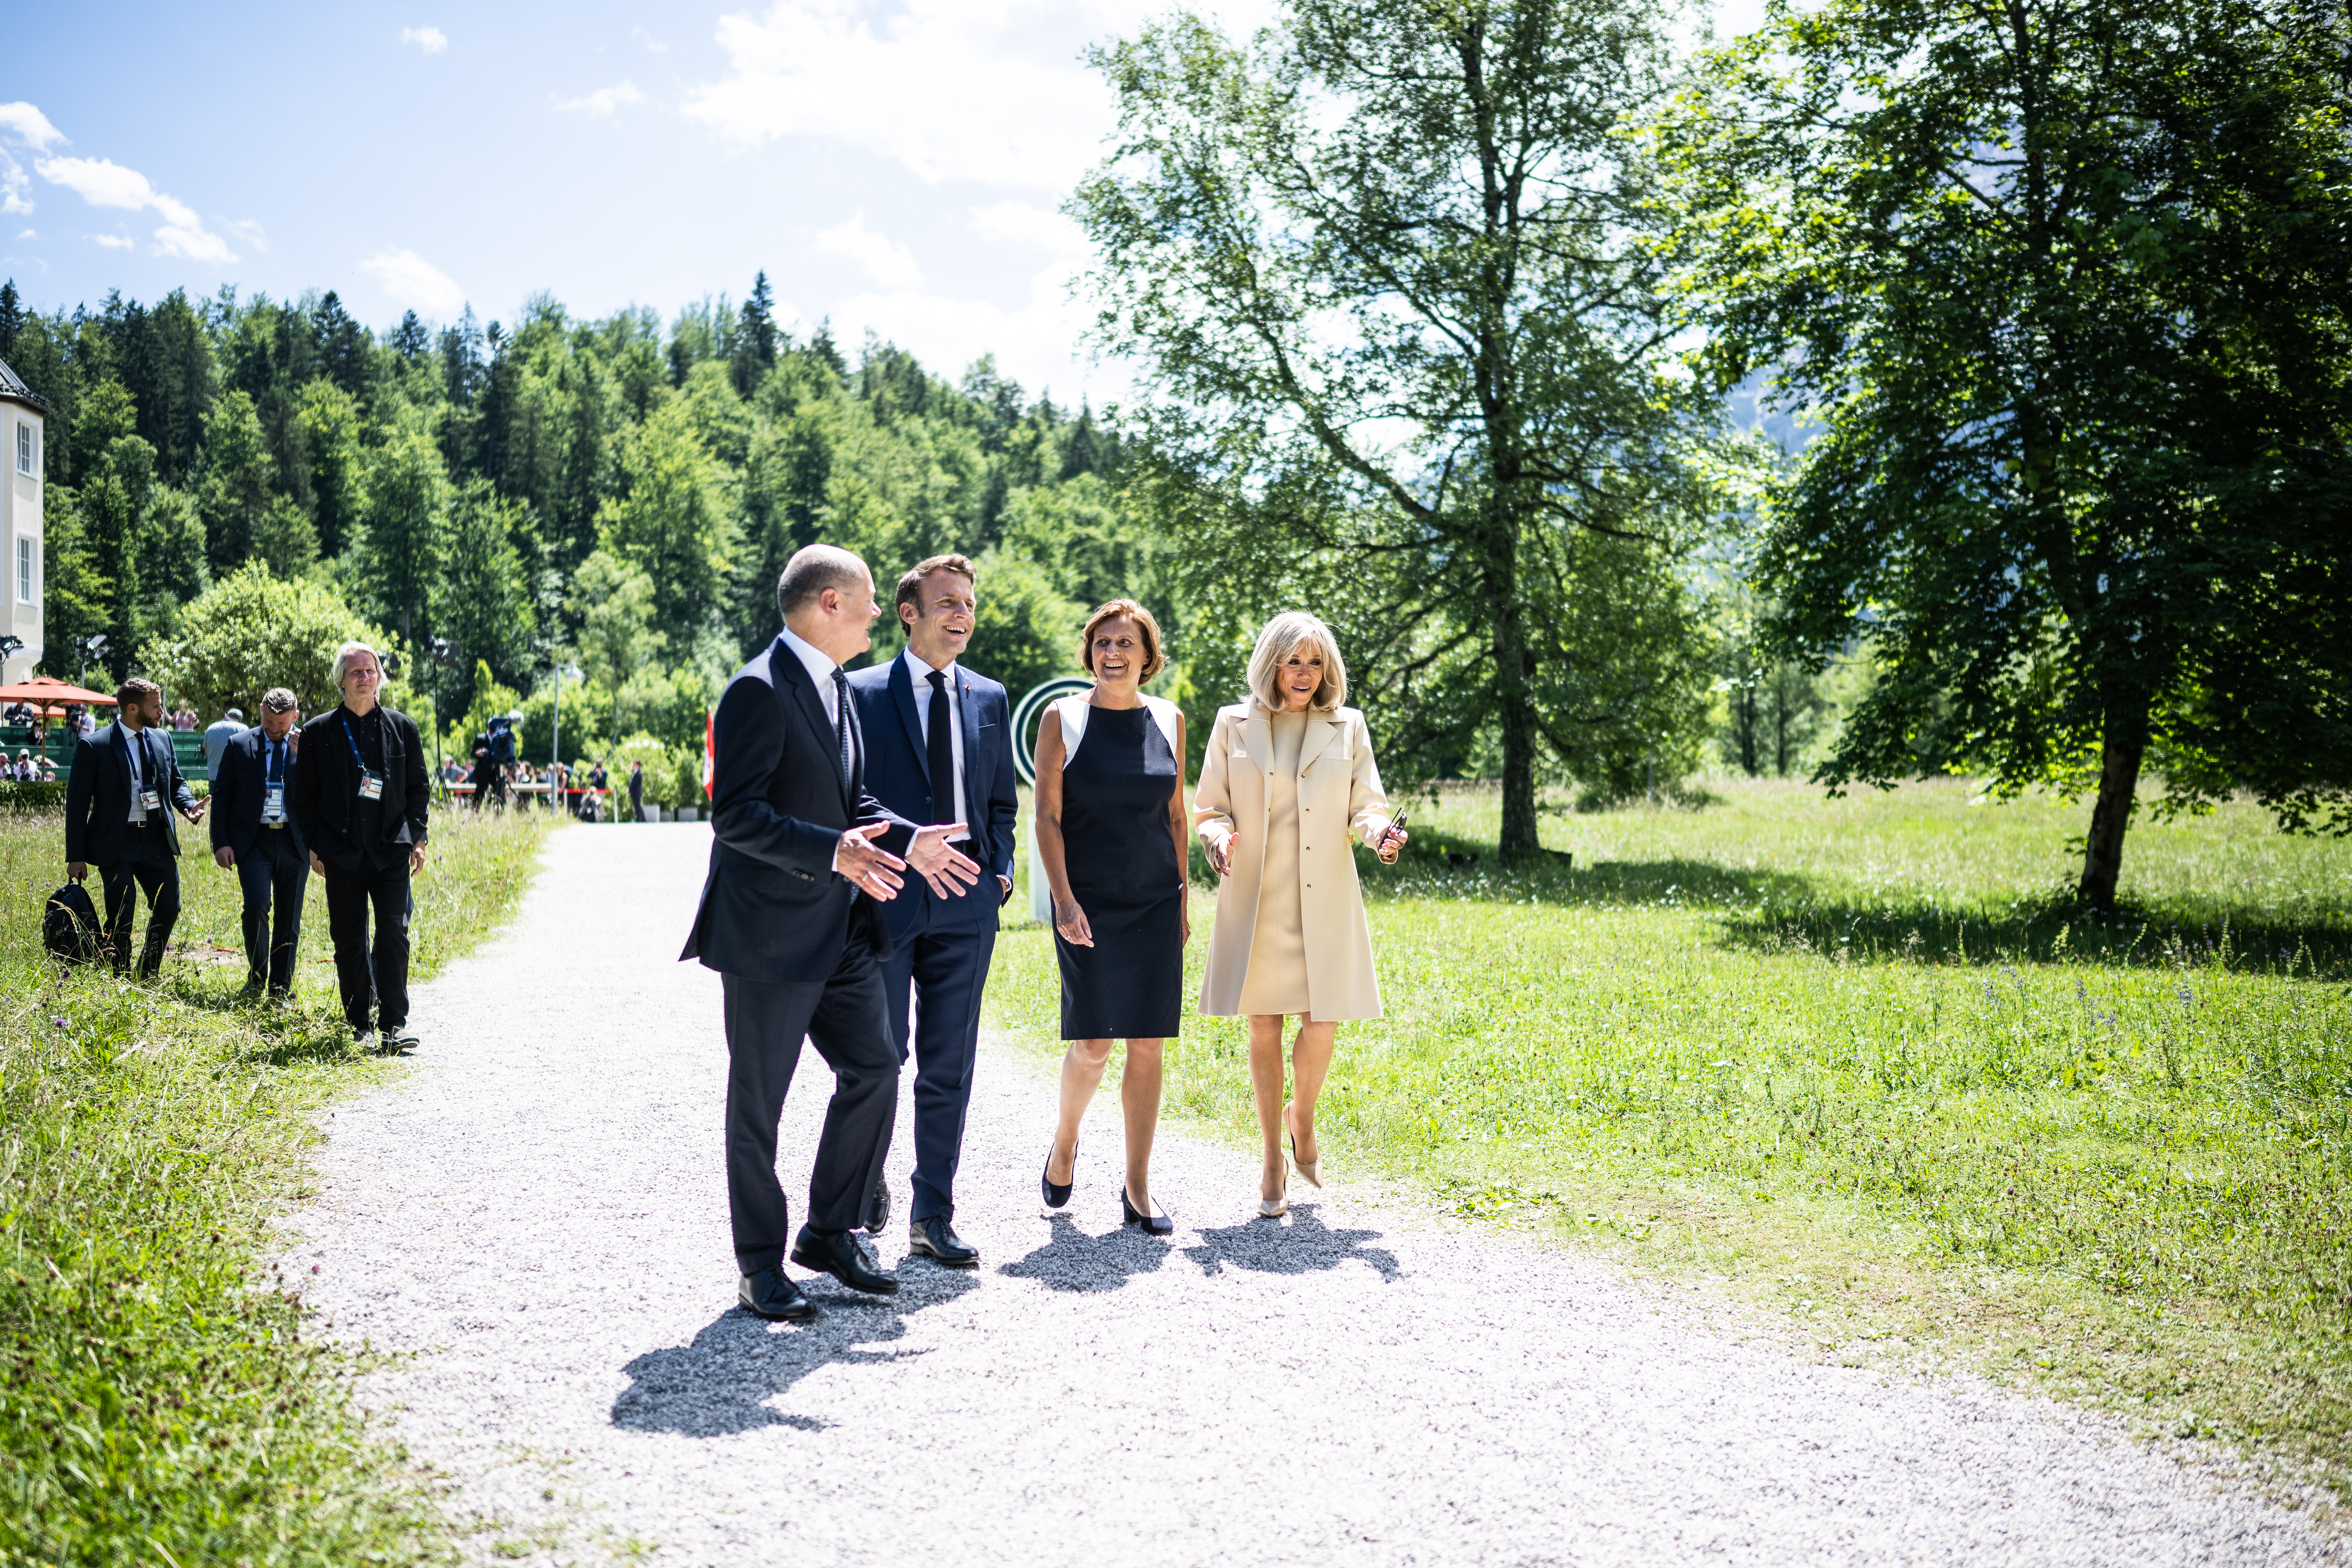 Bundeskanzler Olaf Scholz, seine Frau Britta Ernst, Emmanuel Macron (Präsident Frankreich) und dessen Frau Brigitte Macron, während der Begrüßung zum G7-Gipfel vor Schloss Elmau.